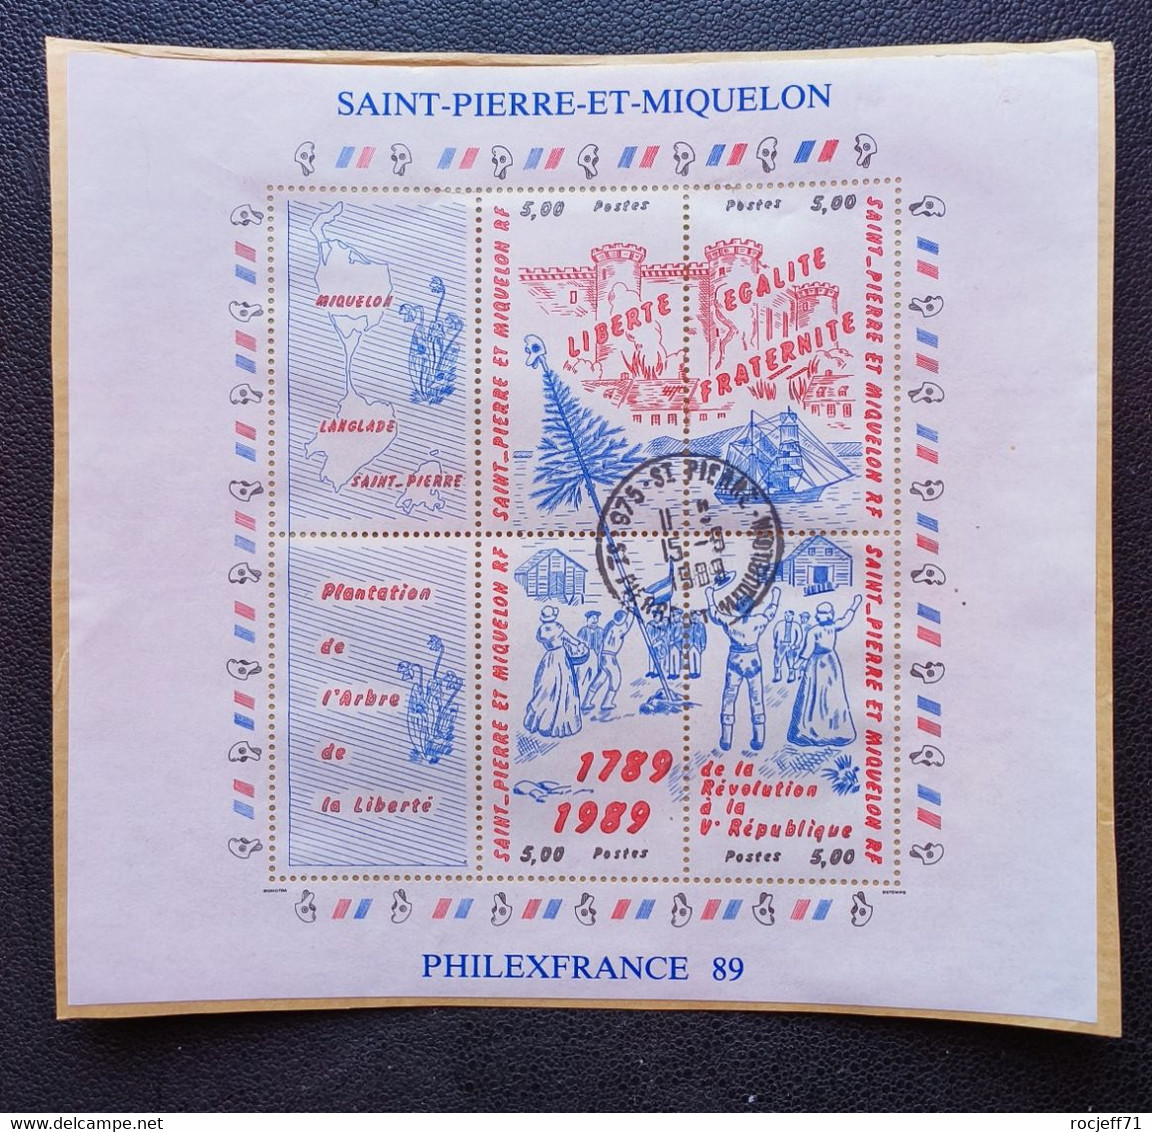 02 - 23  //  Saint Pierre Et Miquelon - Bloc Philexfrance 1989 - Gebraucht